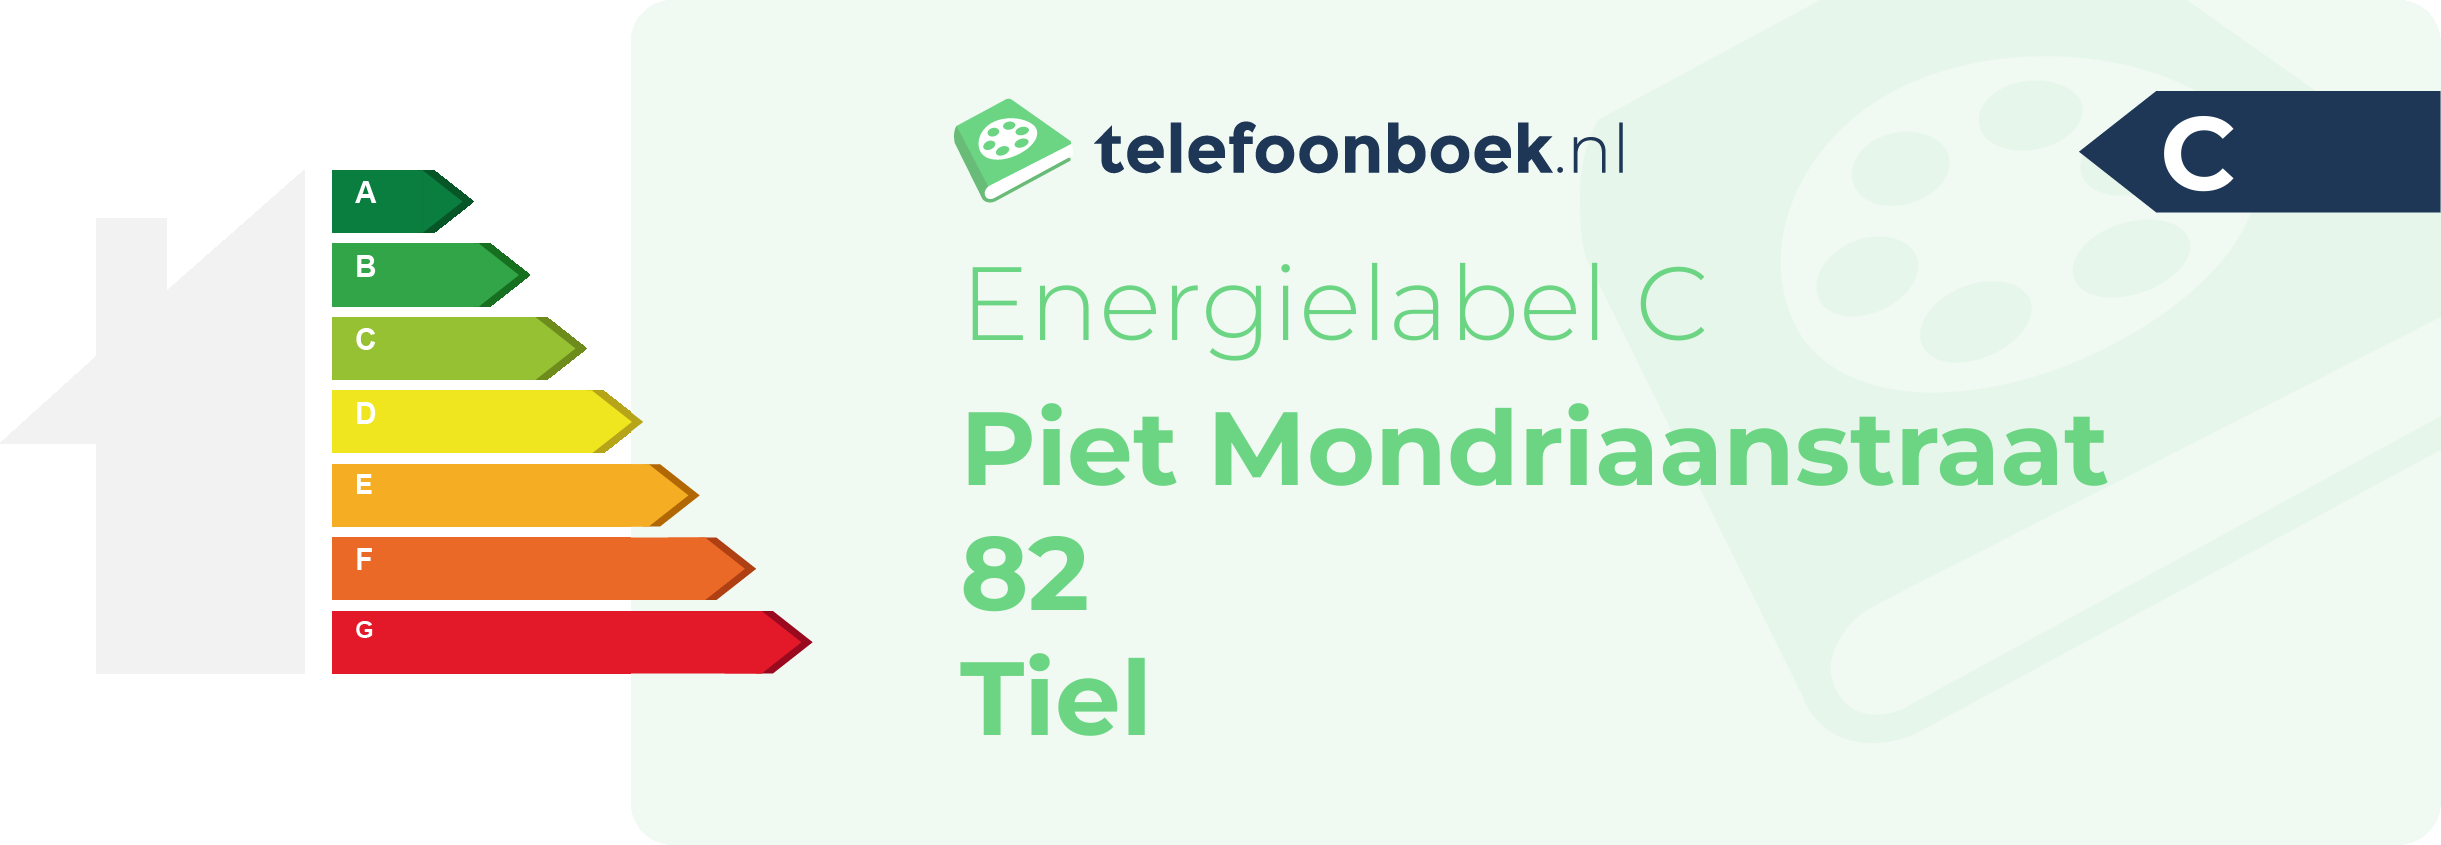 Energielabel Piet Mondriaanstraat 82 Tiel